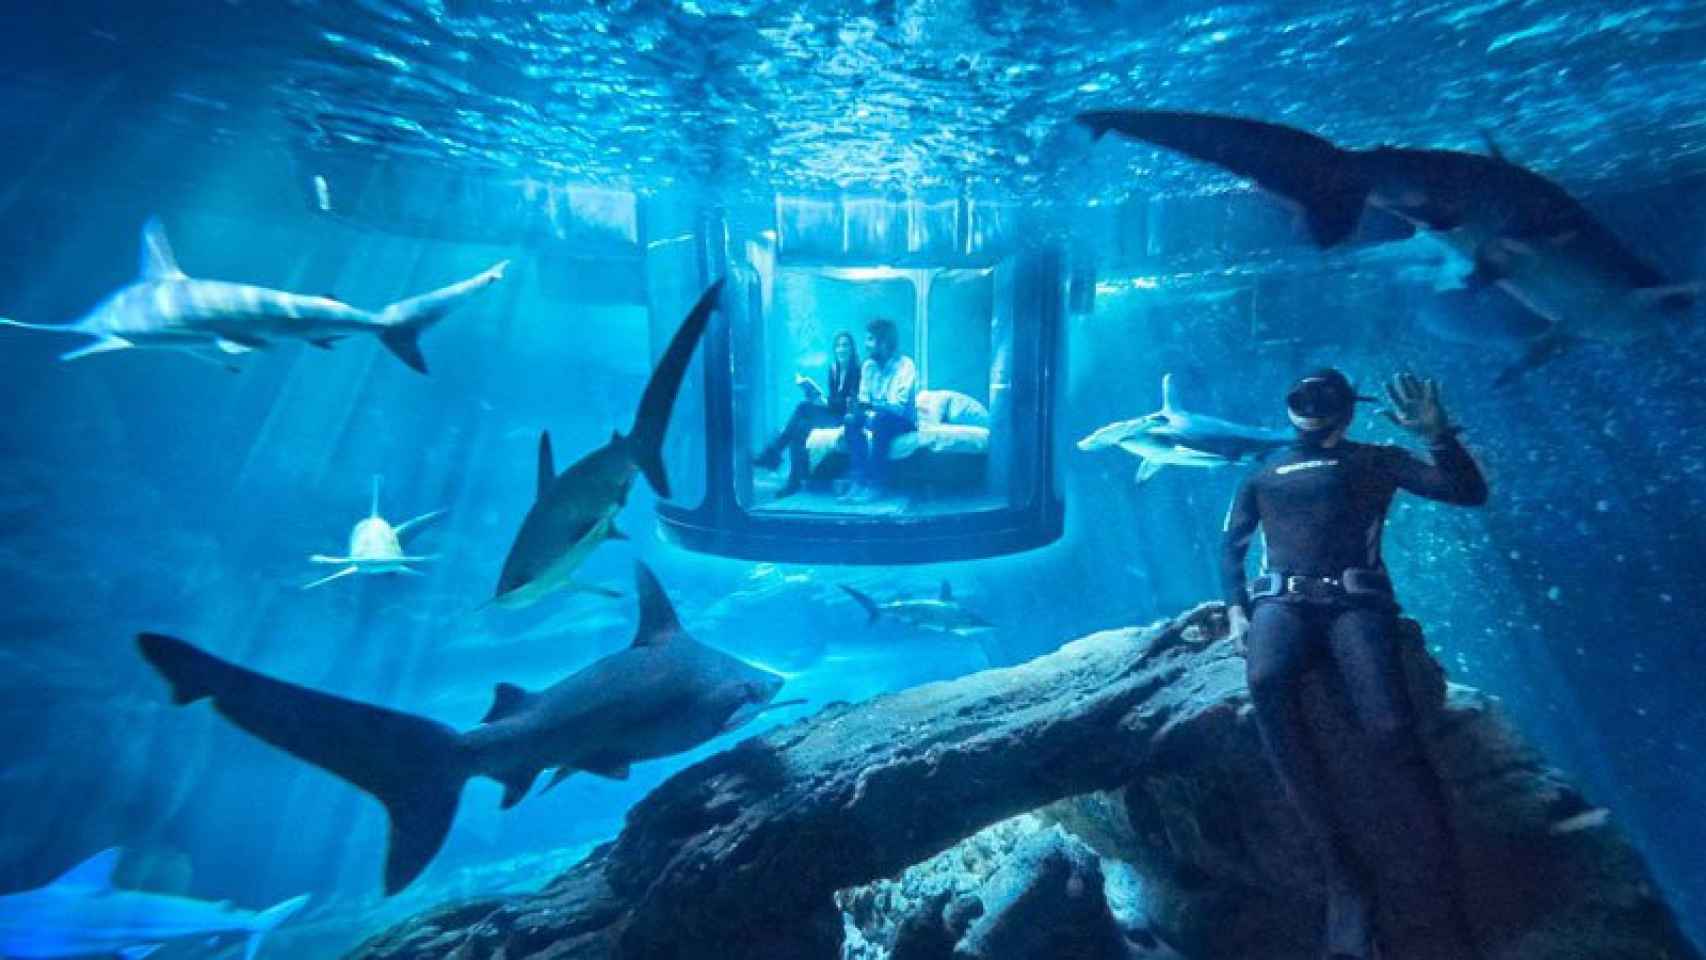 Airbnb sortea una experiencia para dormir entre tiburones una noche.